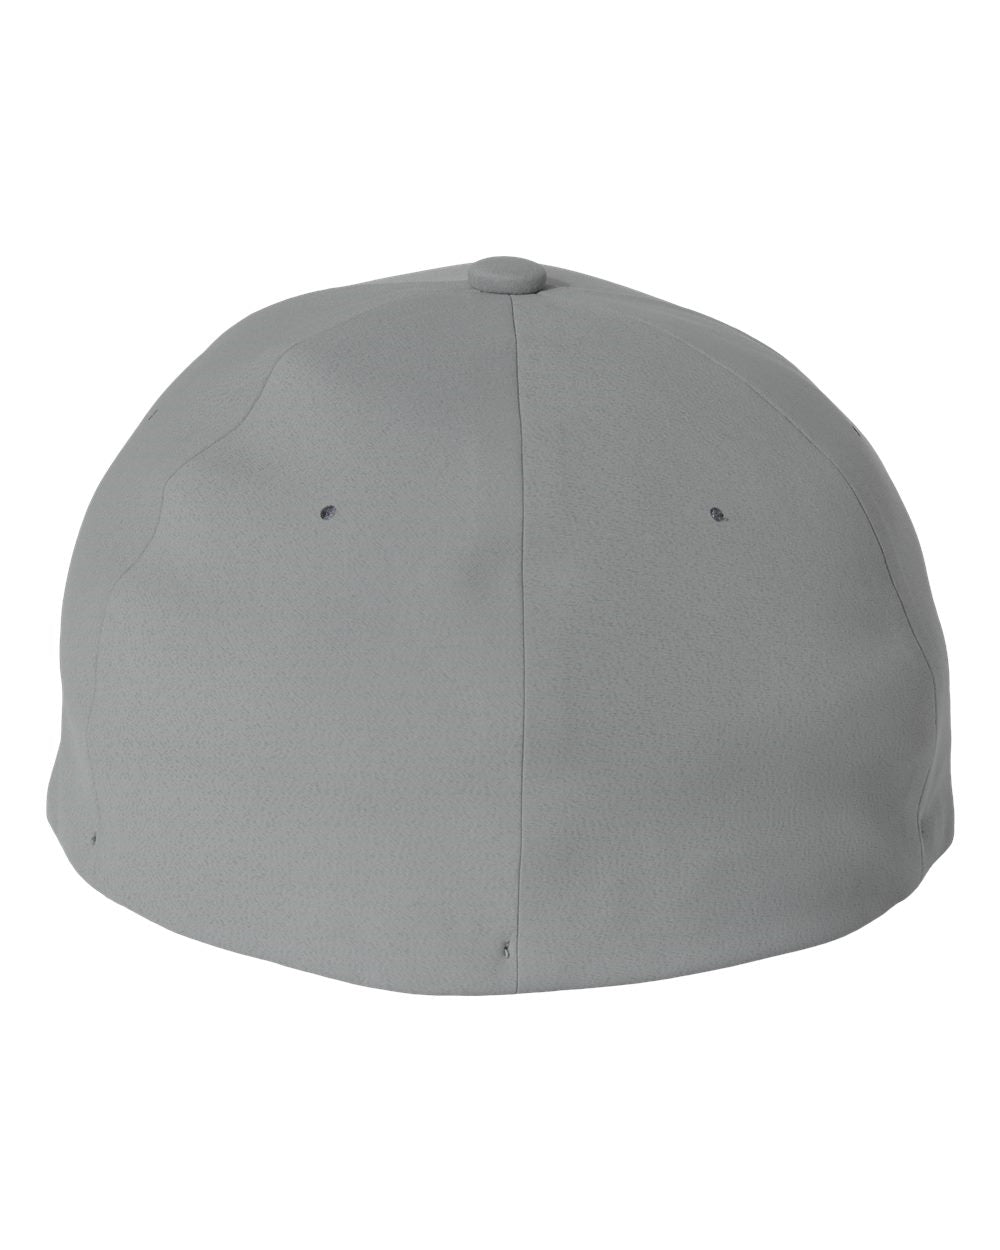 Poco Marlins Delta FlexFit Hat - Adult